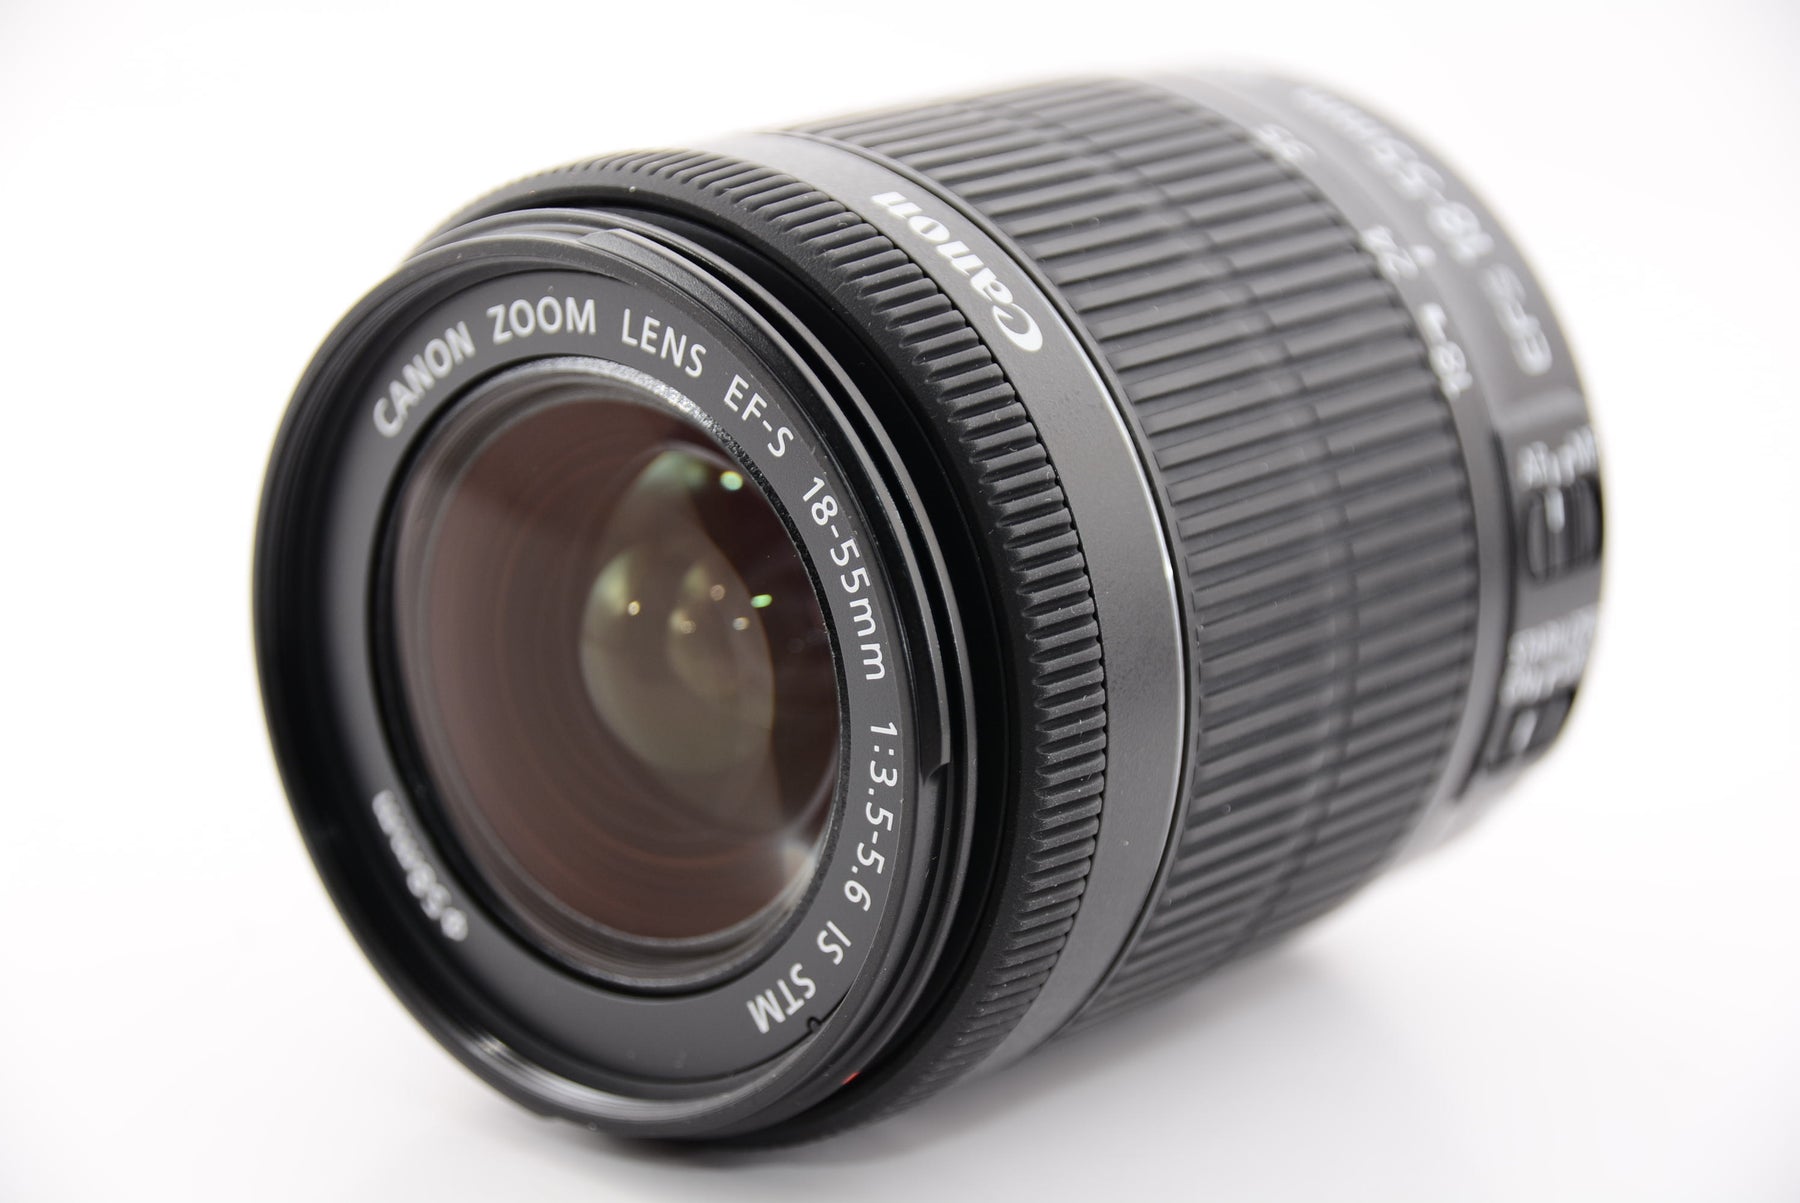 Canon デジタル一眼レフカメラ EOS Kiss X7 レンズキット EF-S18-55mm F3.5-5.6 IS STM付属 KISSX7-1 - 2